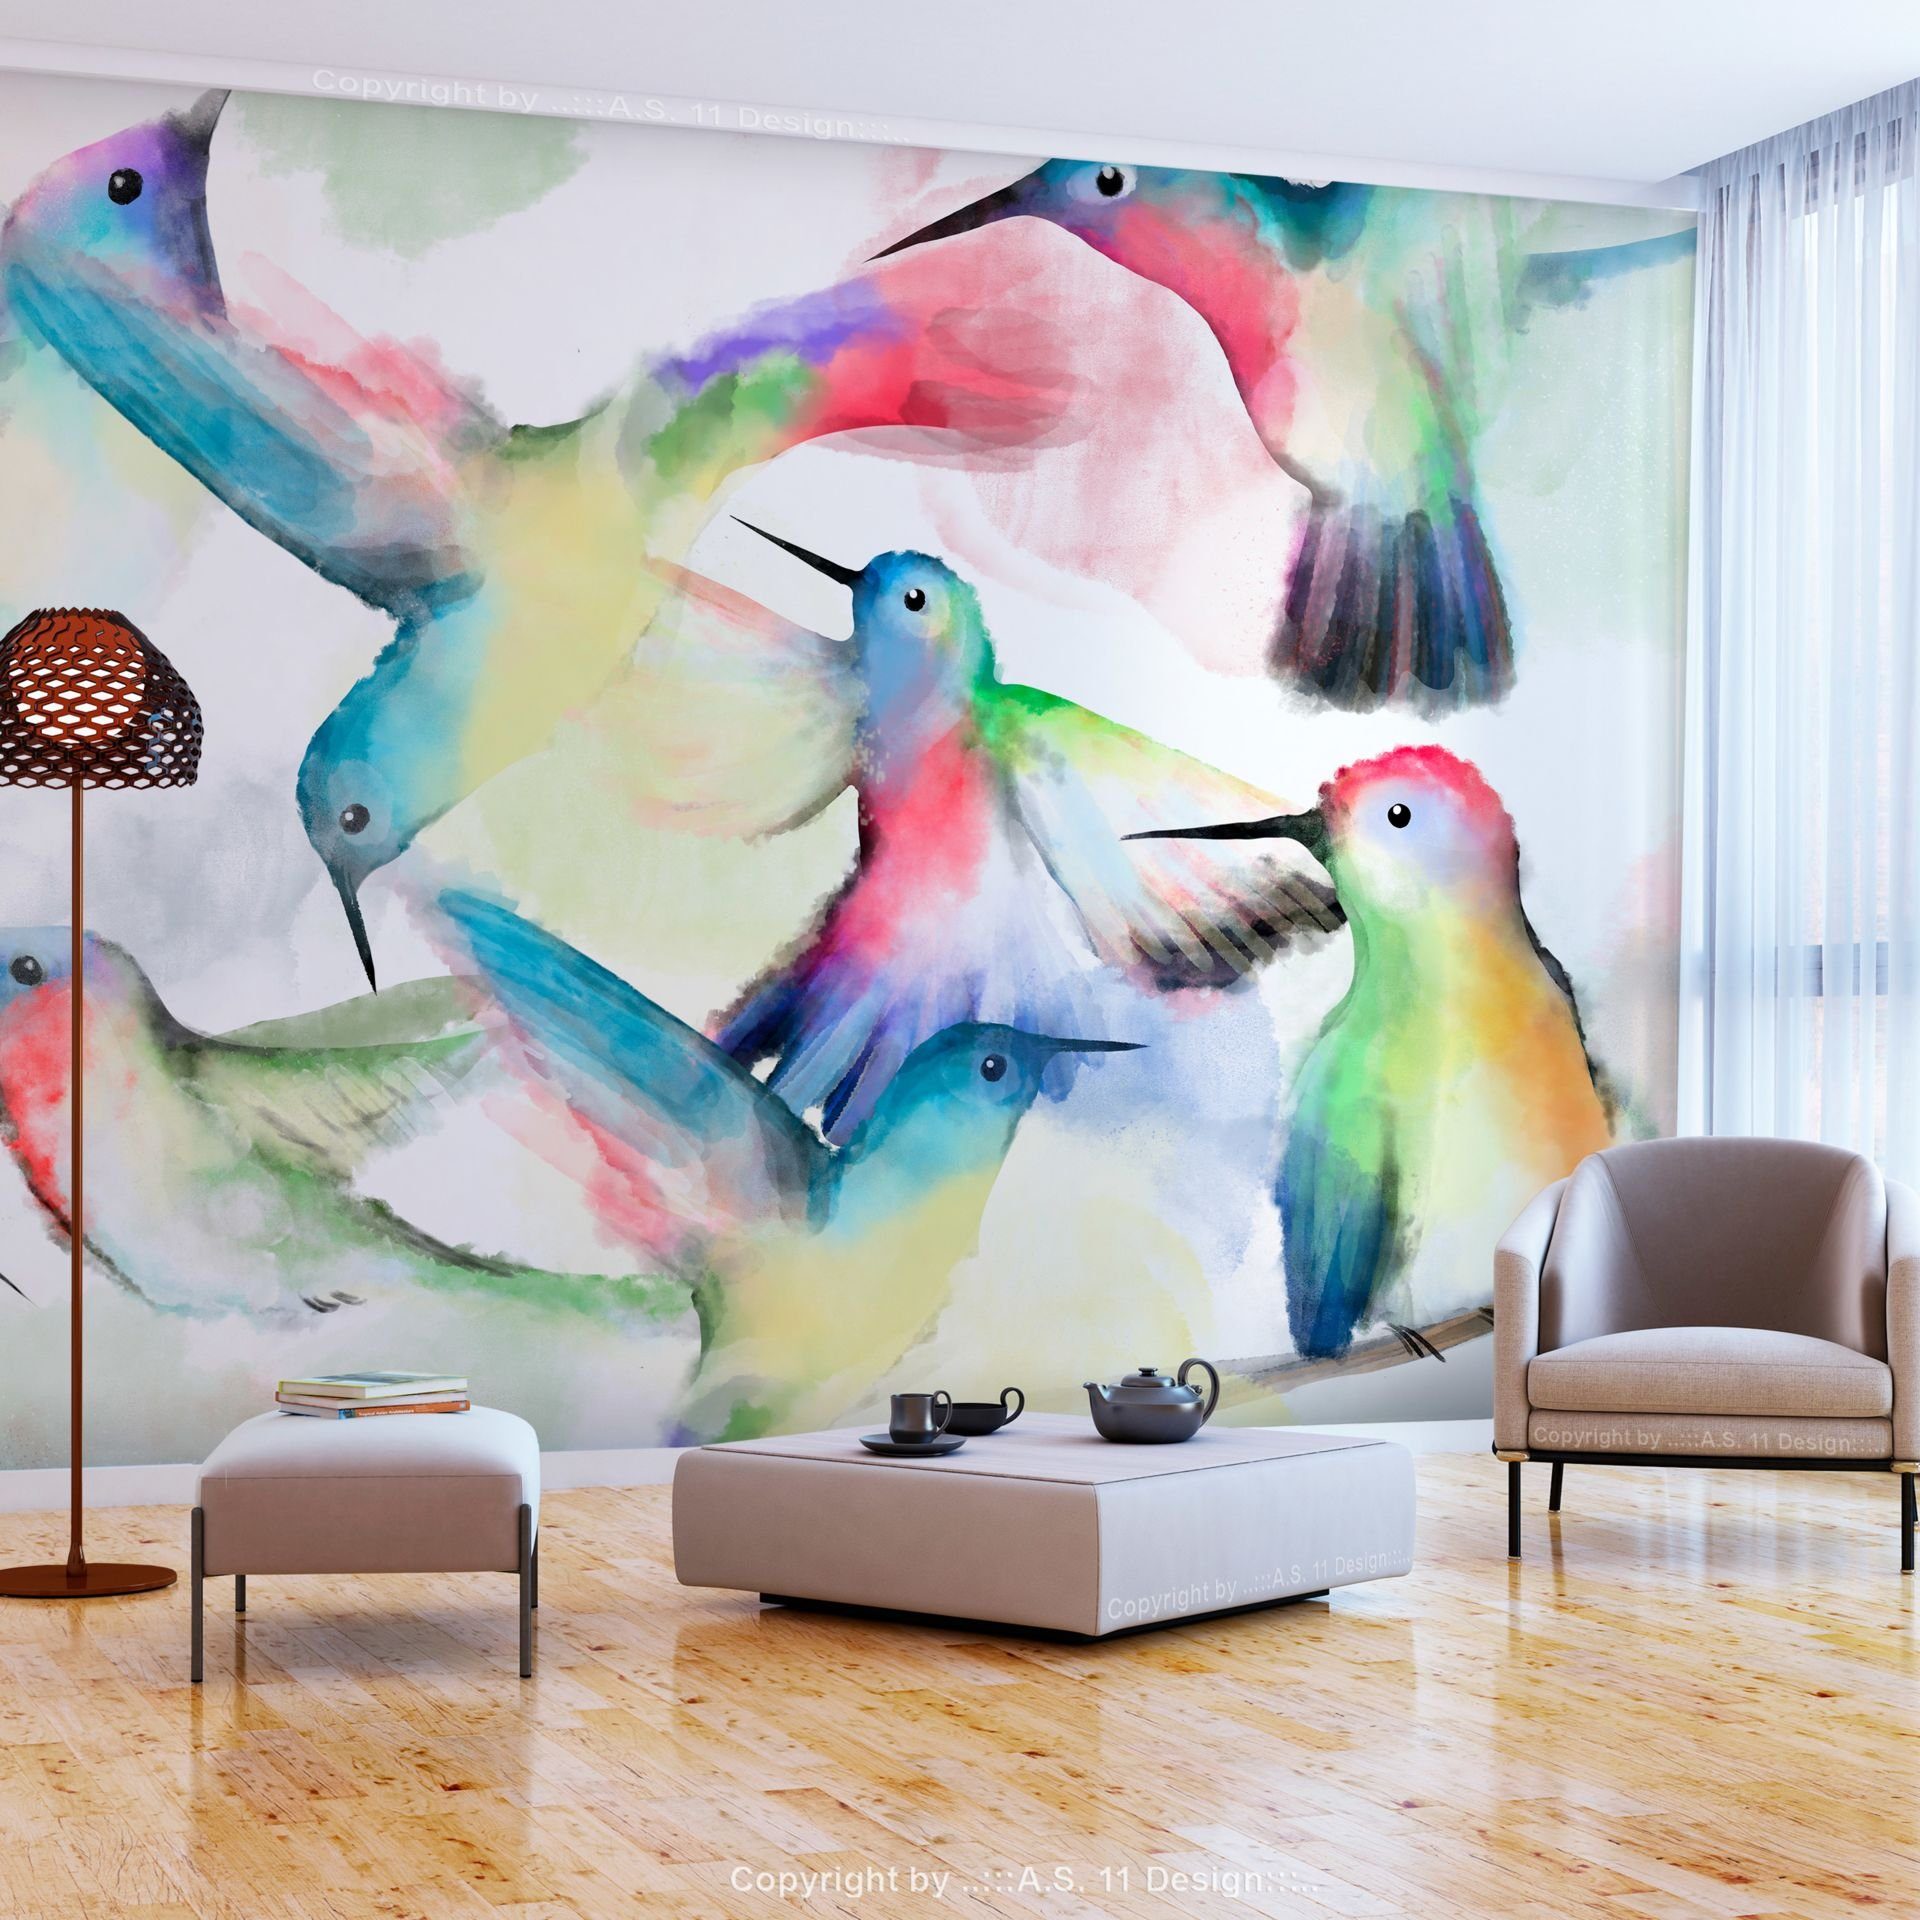 KUNSTLOFT Vliestapete Watercolor Birds 0.98x0.7 m, matt, lichtbeständige Design Tapete